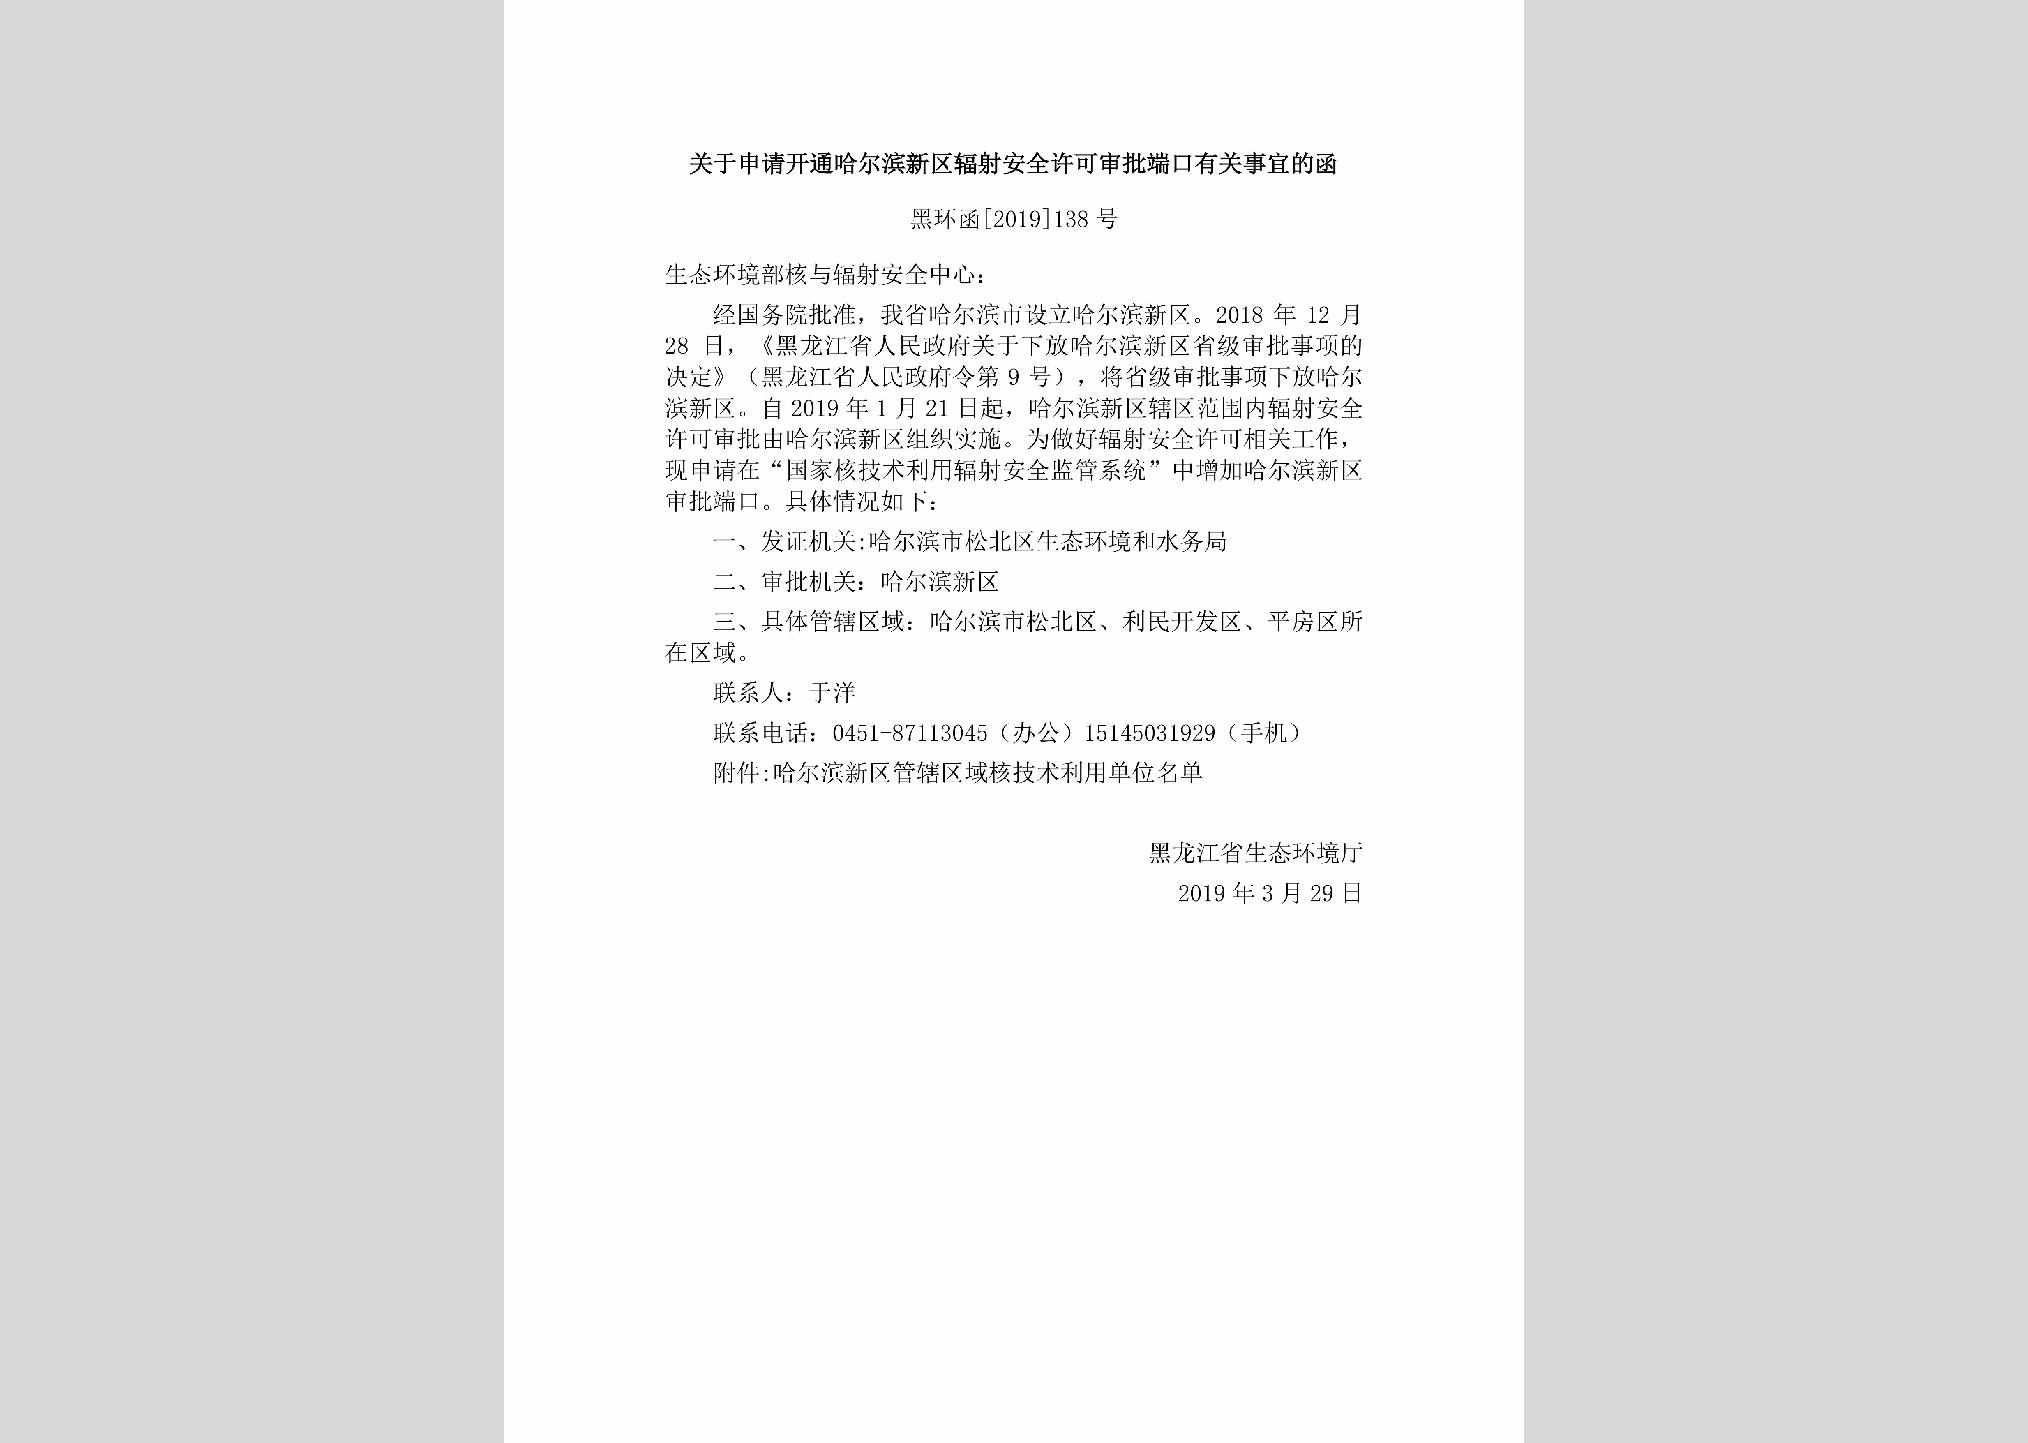 黑环函[2019]138号：关于申请开通哈尔滨新区辐射安全许可审批端口有关事宜的函